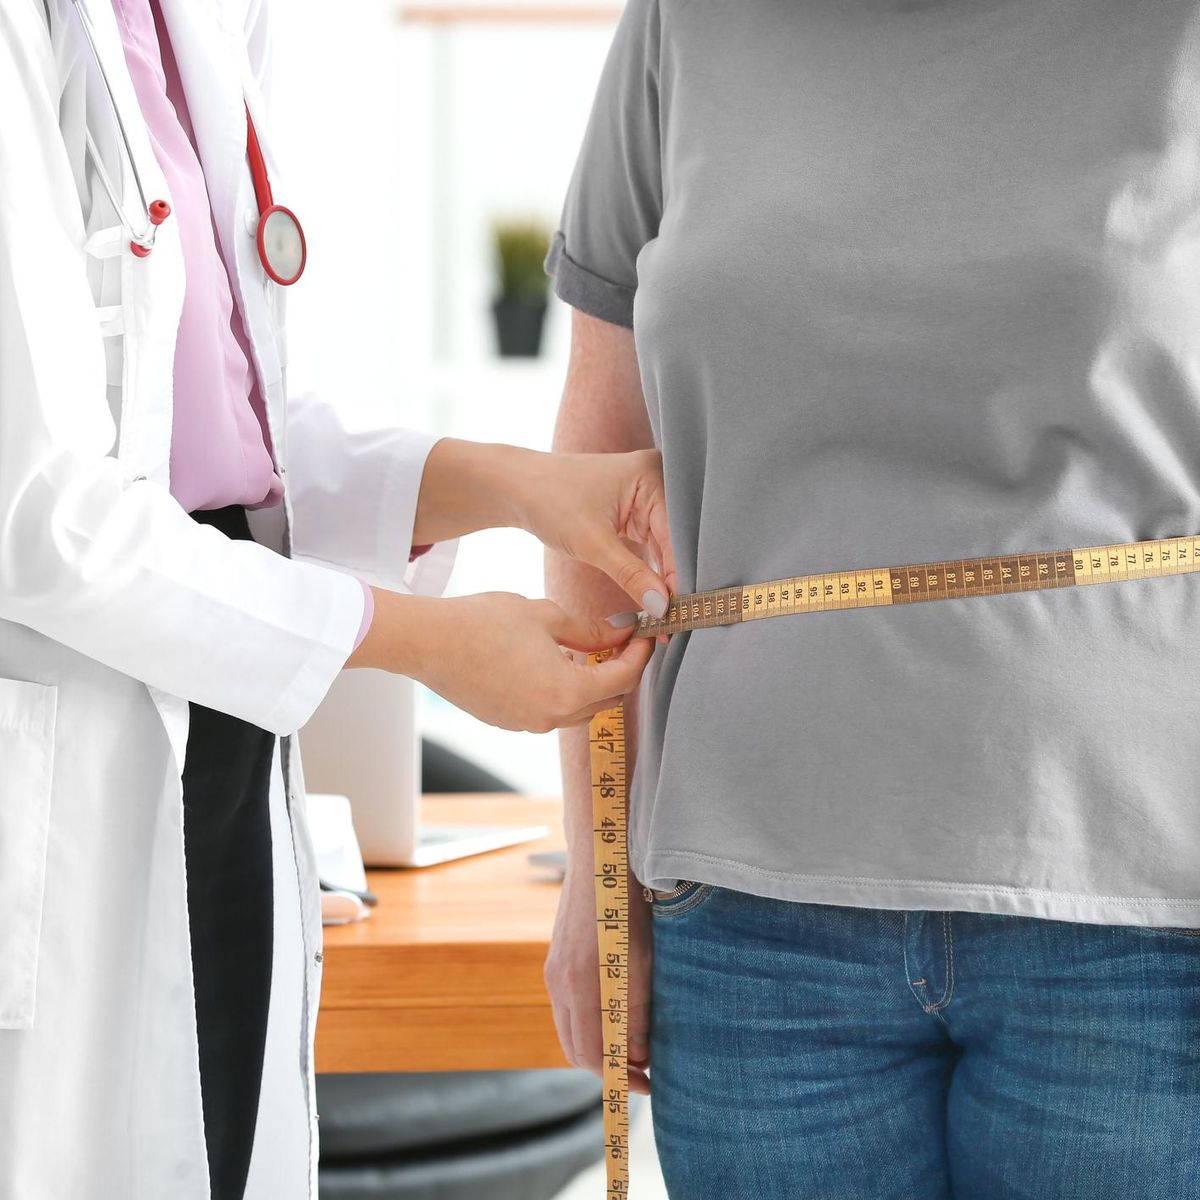 15 maladies qui influencent notre poids – Doctissimo